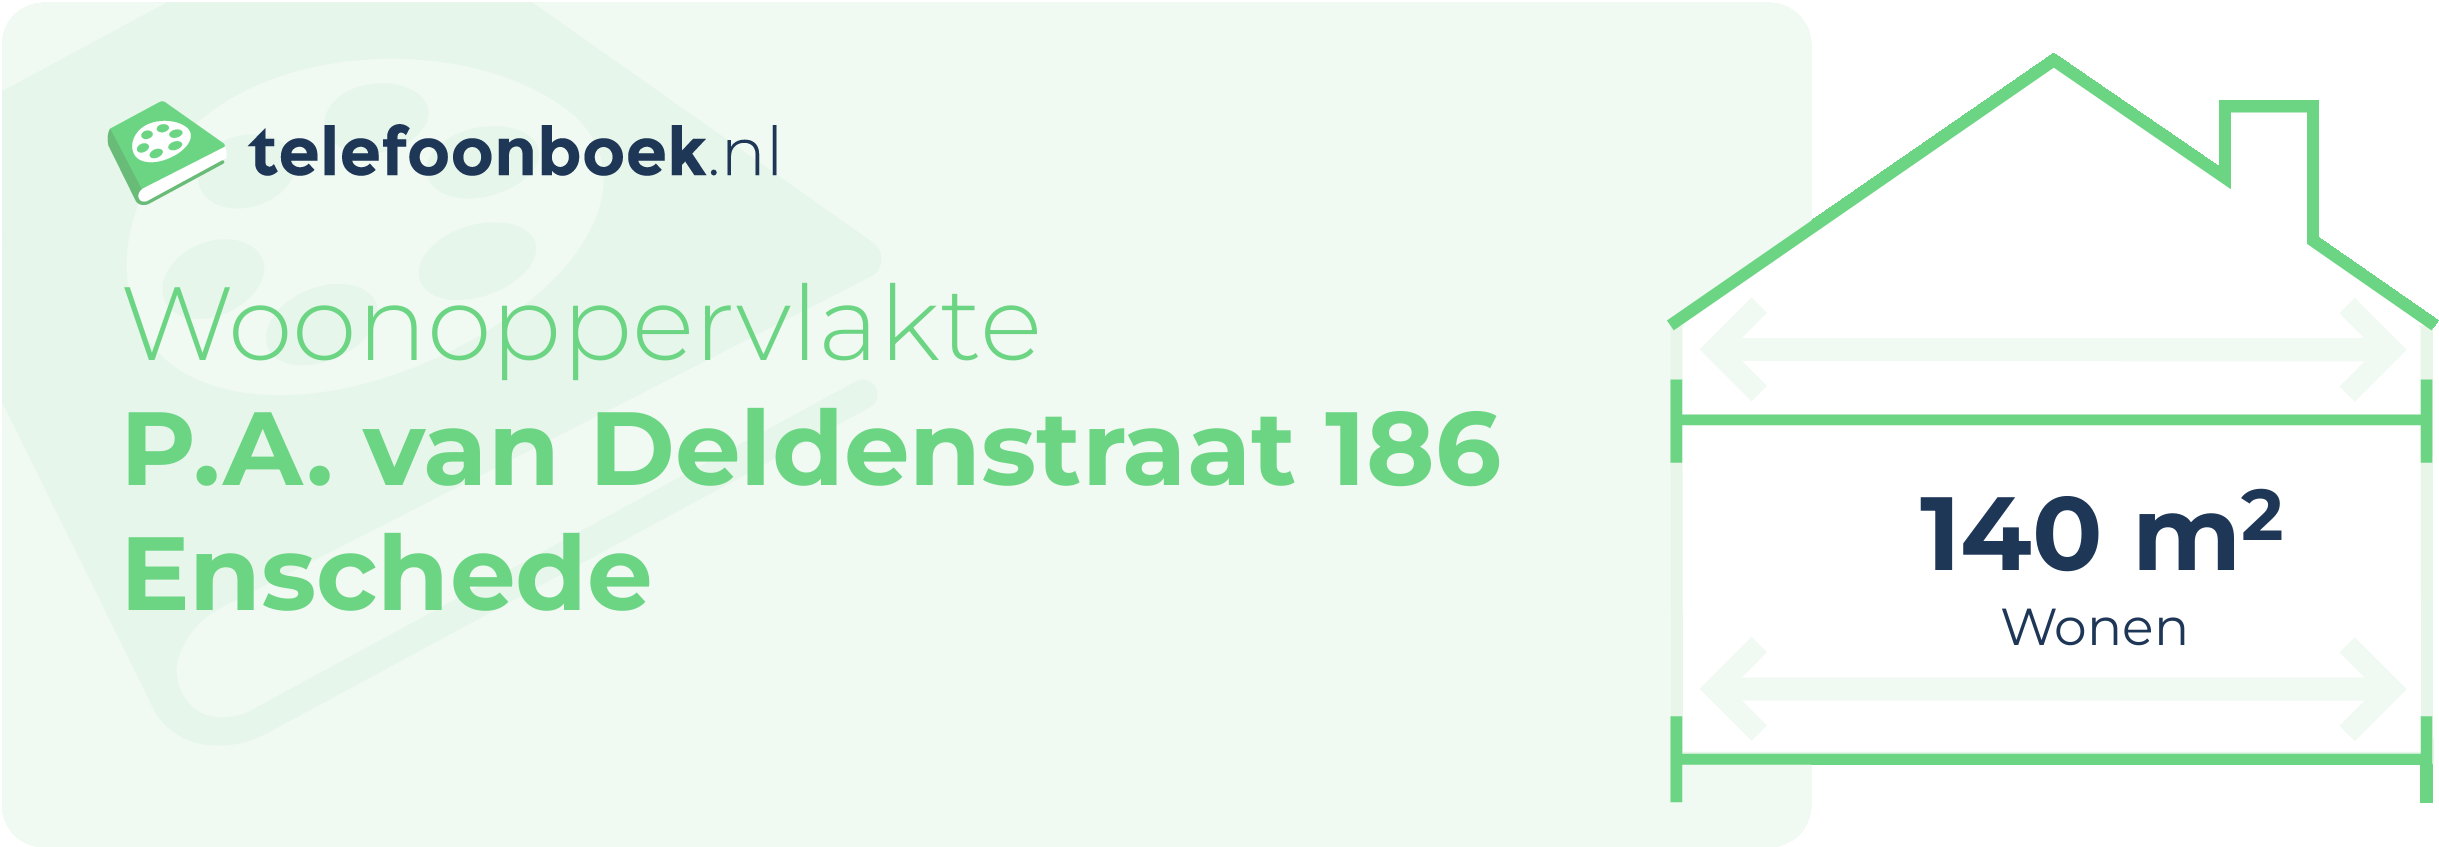 Woonoppervlakte P.A. Van Deldenstraat 186 Enschede